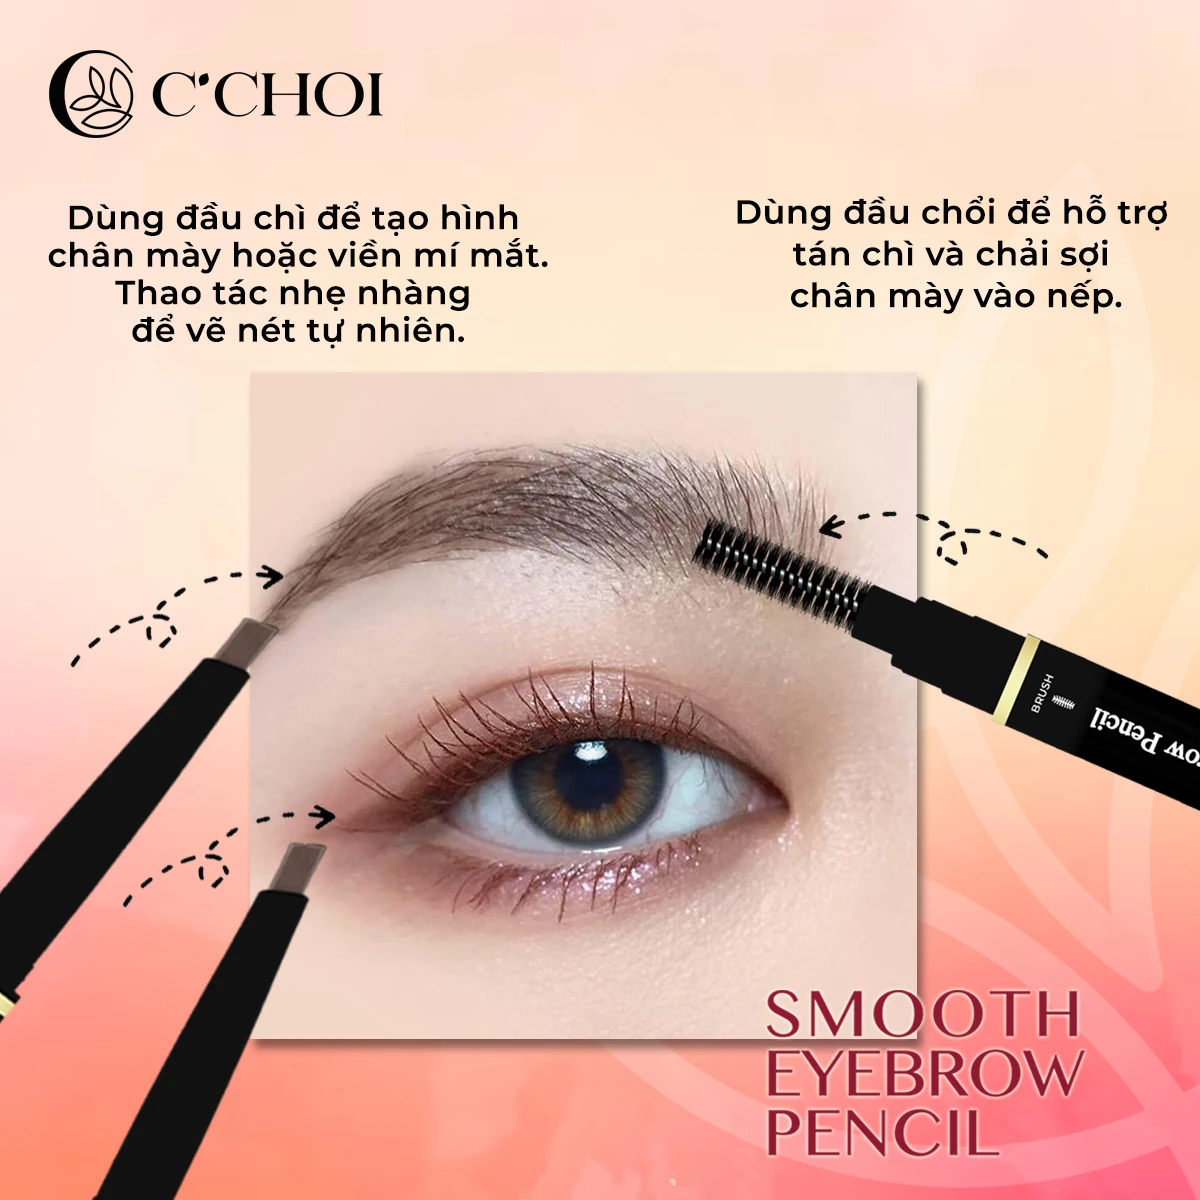 Cách Sử Dụng Chì Kẻ Mày C'choi - Smooth Eyebrow Pencil - Punar - Droppii Shops